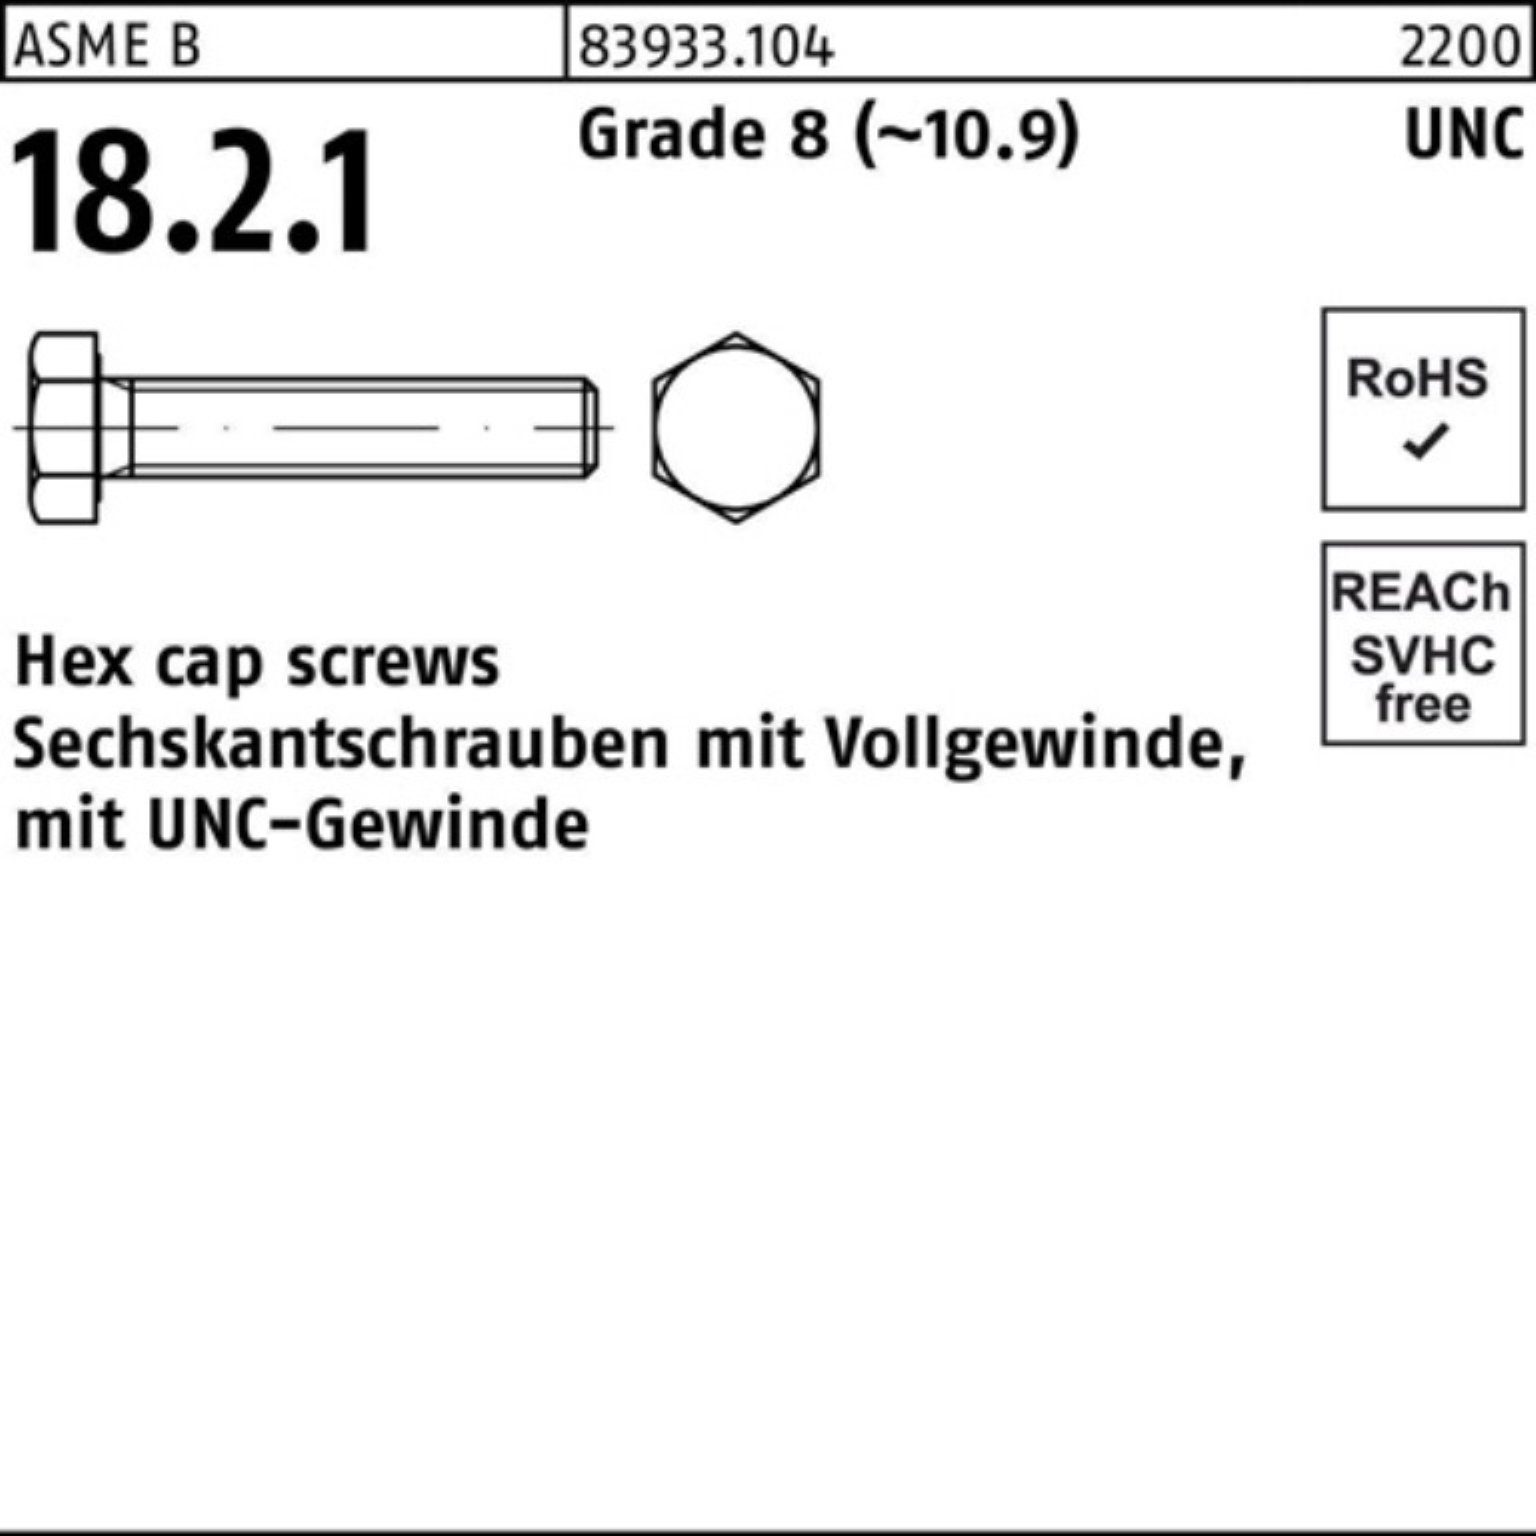 Reyher Sechskantschraube 100er Pack Sechskantschraube R 83933 UNC-Gewinde VG 3/8x 3/4 Grade 8